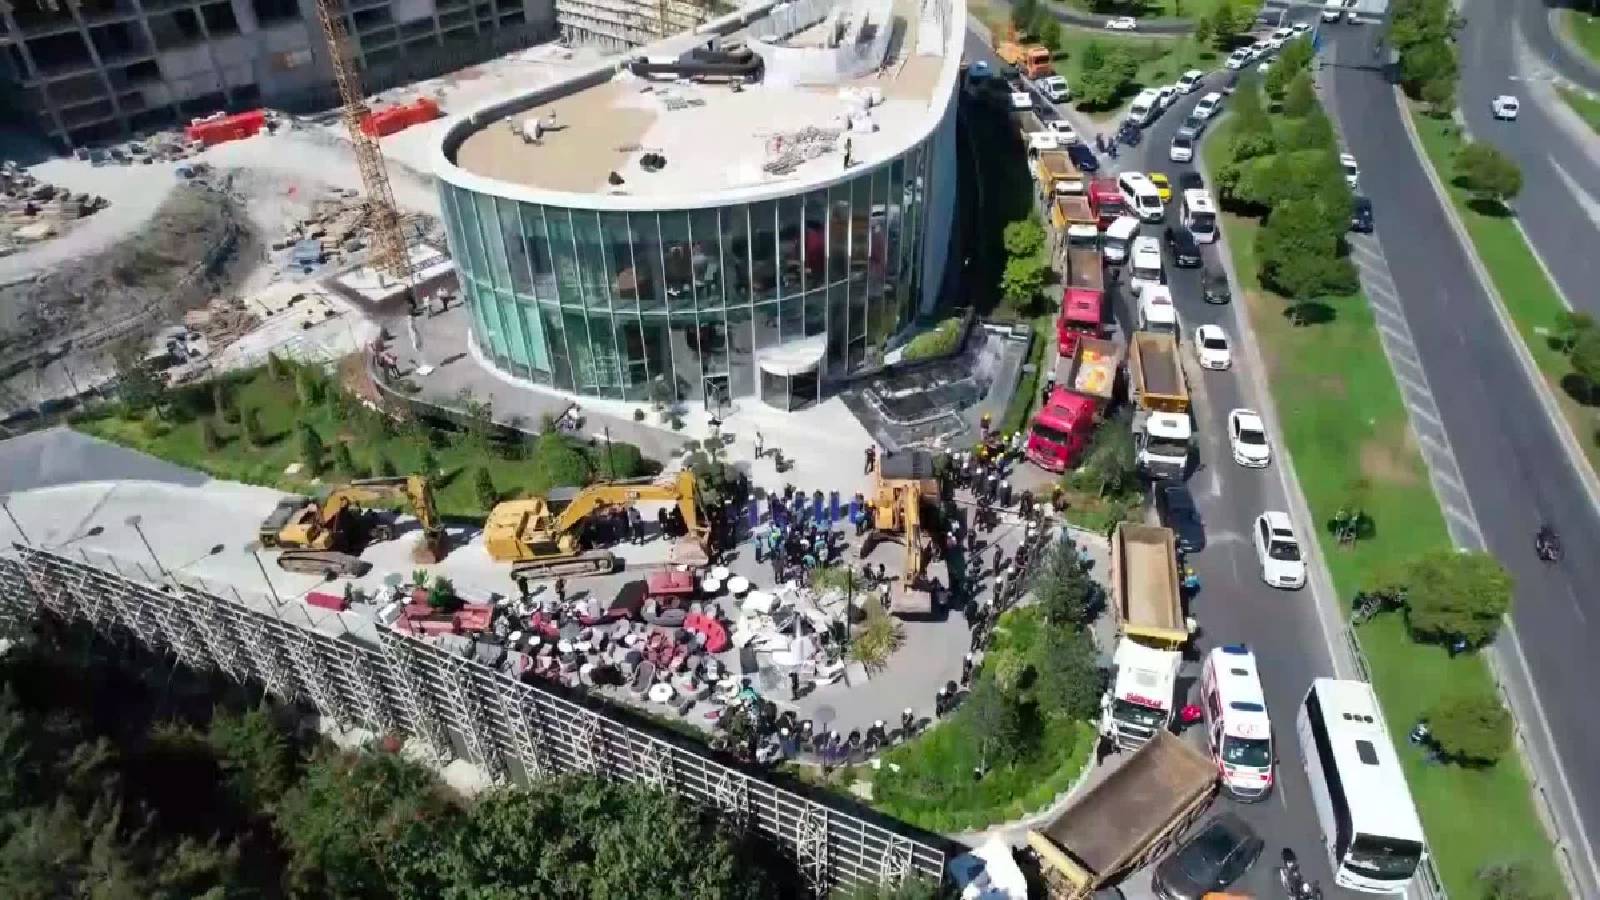 Zeytinburnu'nda yıkımı engellenen yapı hakkında Valilik'ten açıklama: Kanun gereği kamu mülkü hüviyeti kazanmıştır